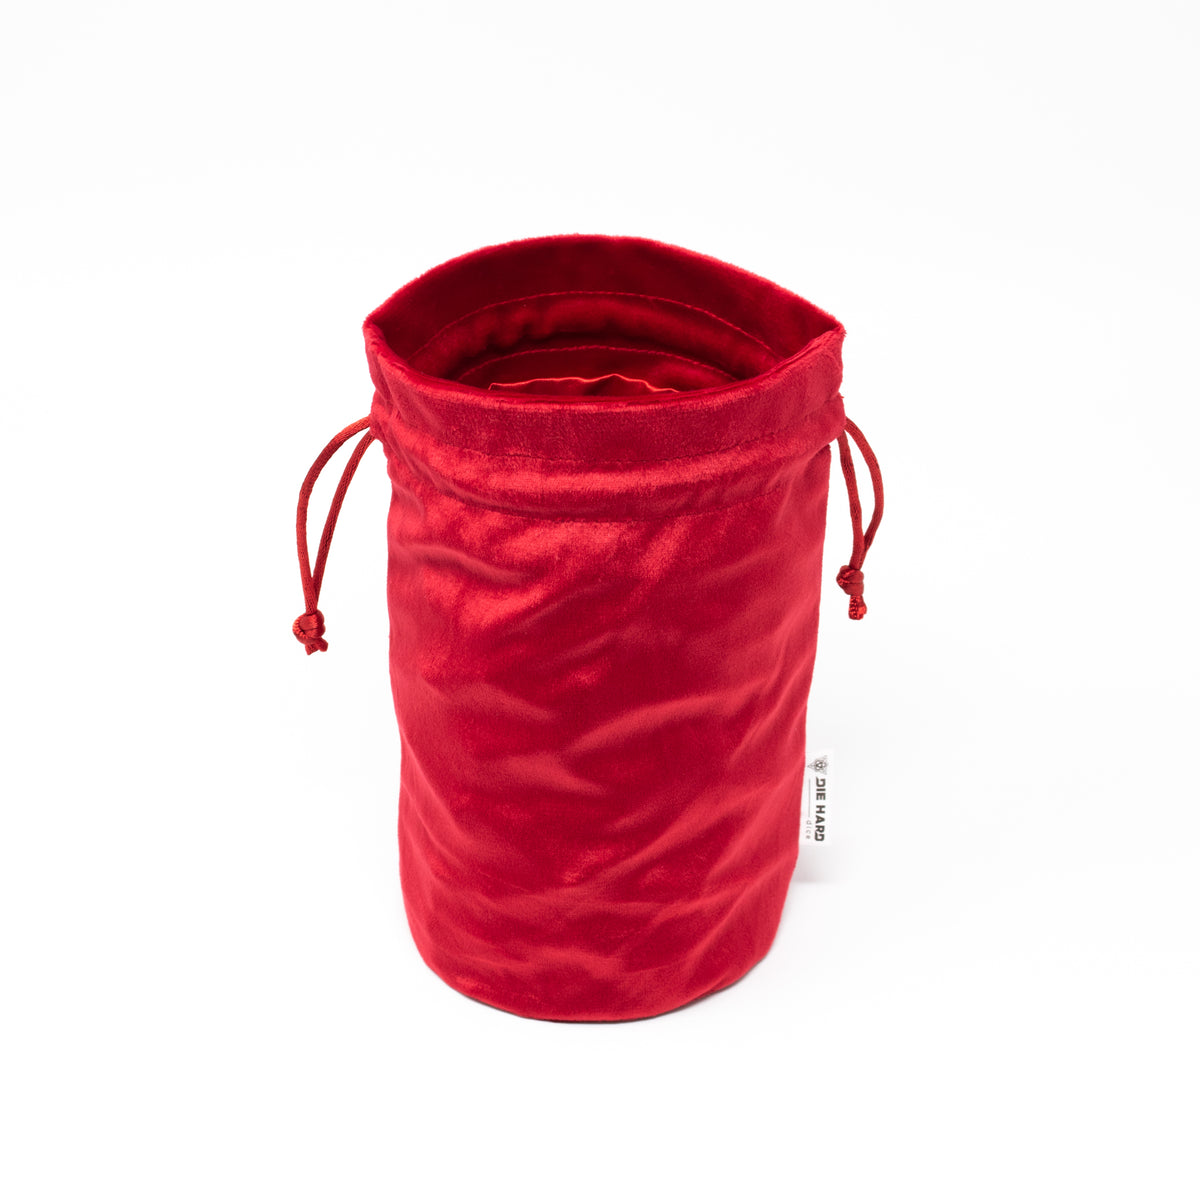 Level 1 Bag of Hoarding - Red